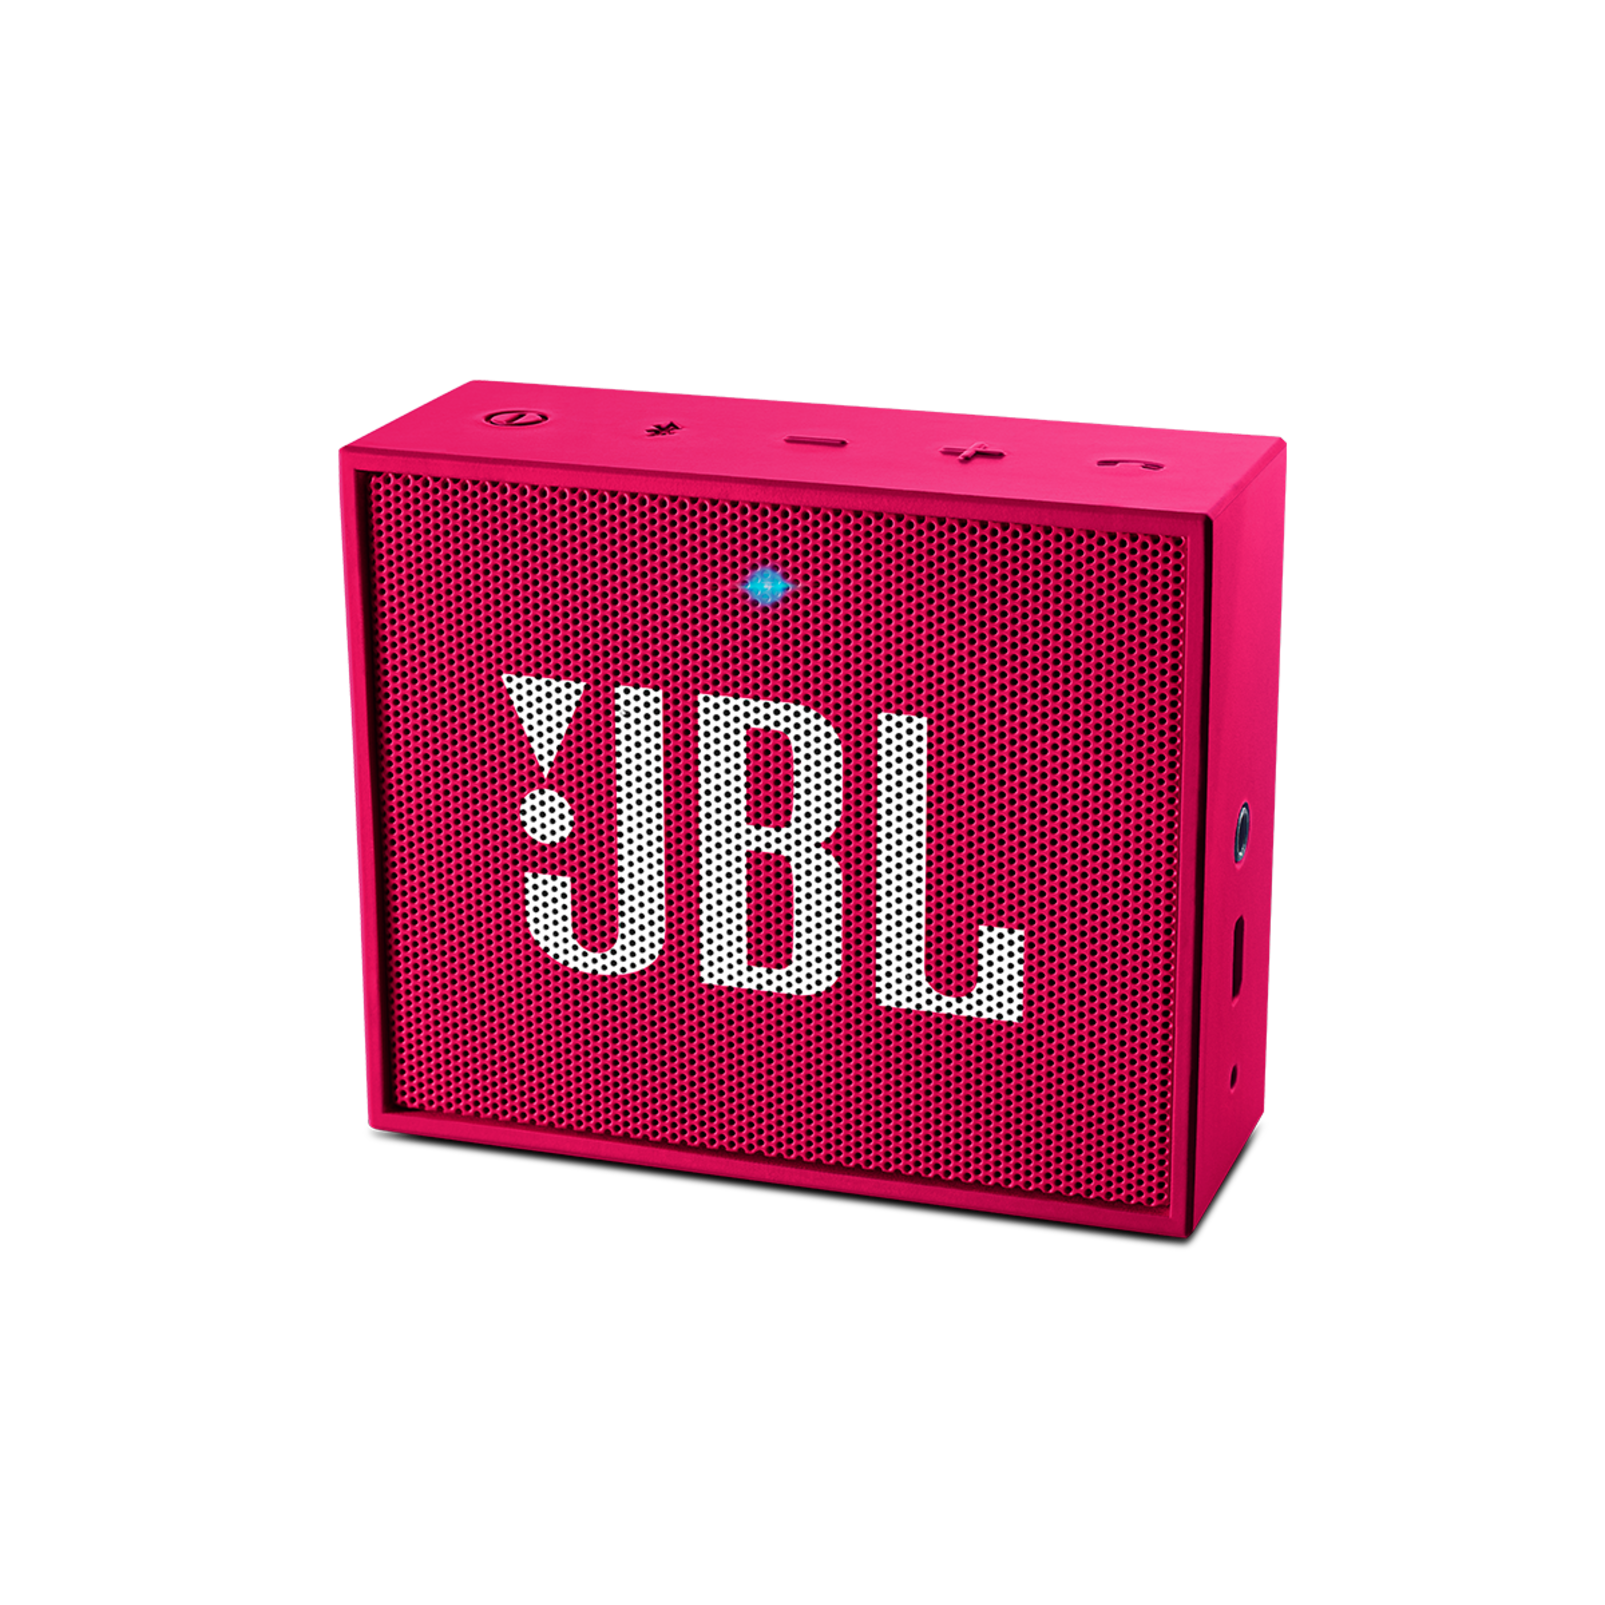 Колонка jbl квадратная. Колонка JBL go квадратная маленькая. Колонка JBL красная маленькая квадратная. Колонка JBL go 4. Портативная колонка JBL go 3.